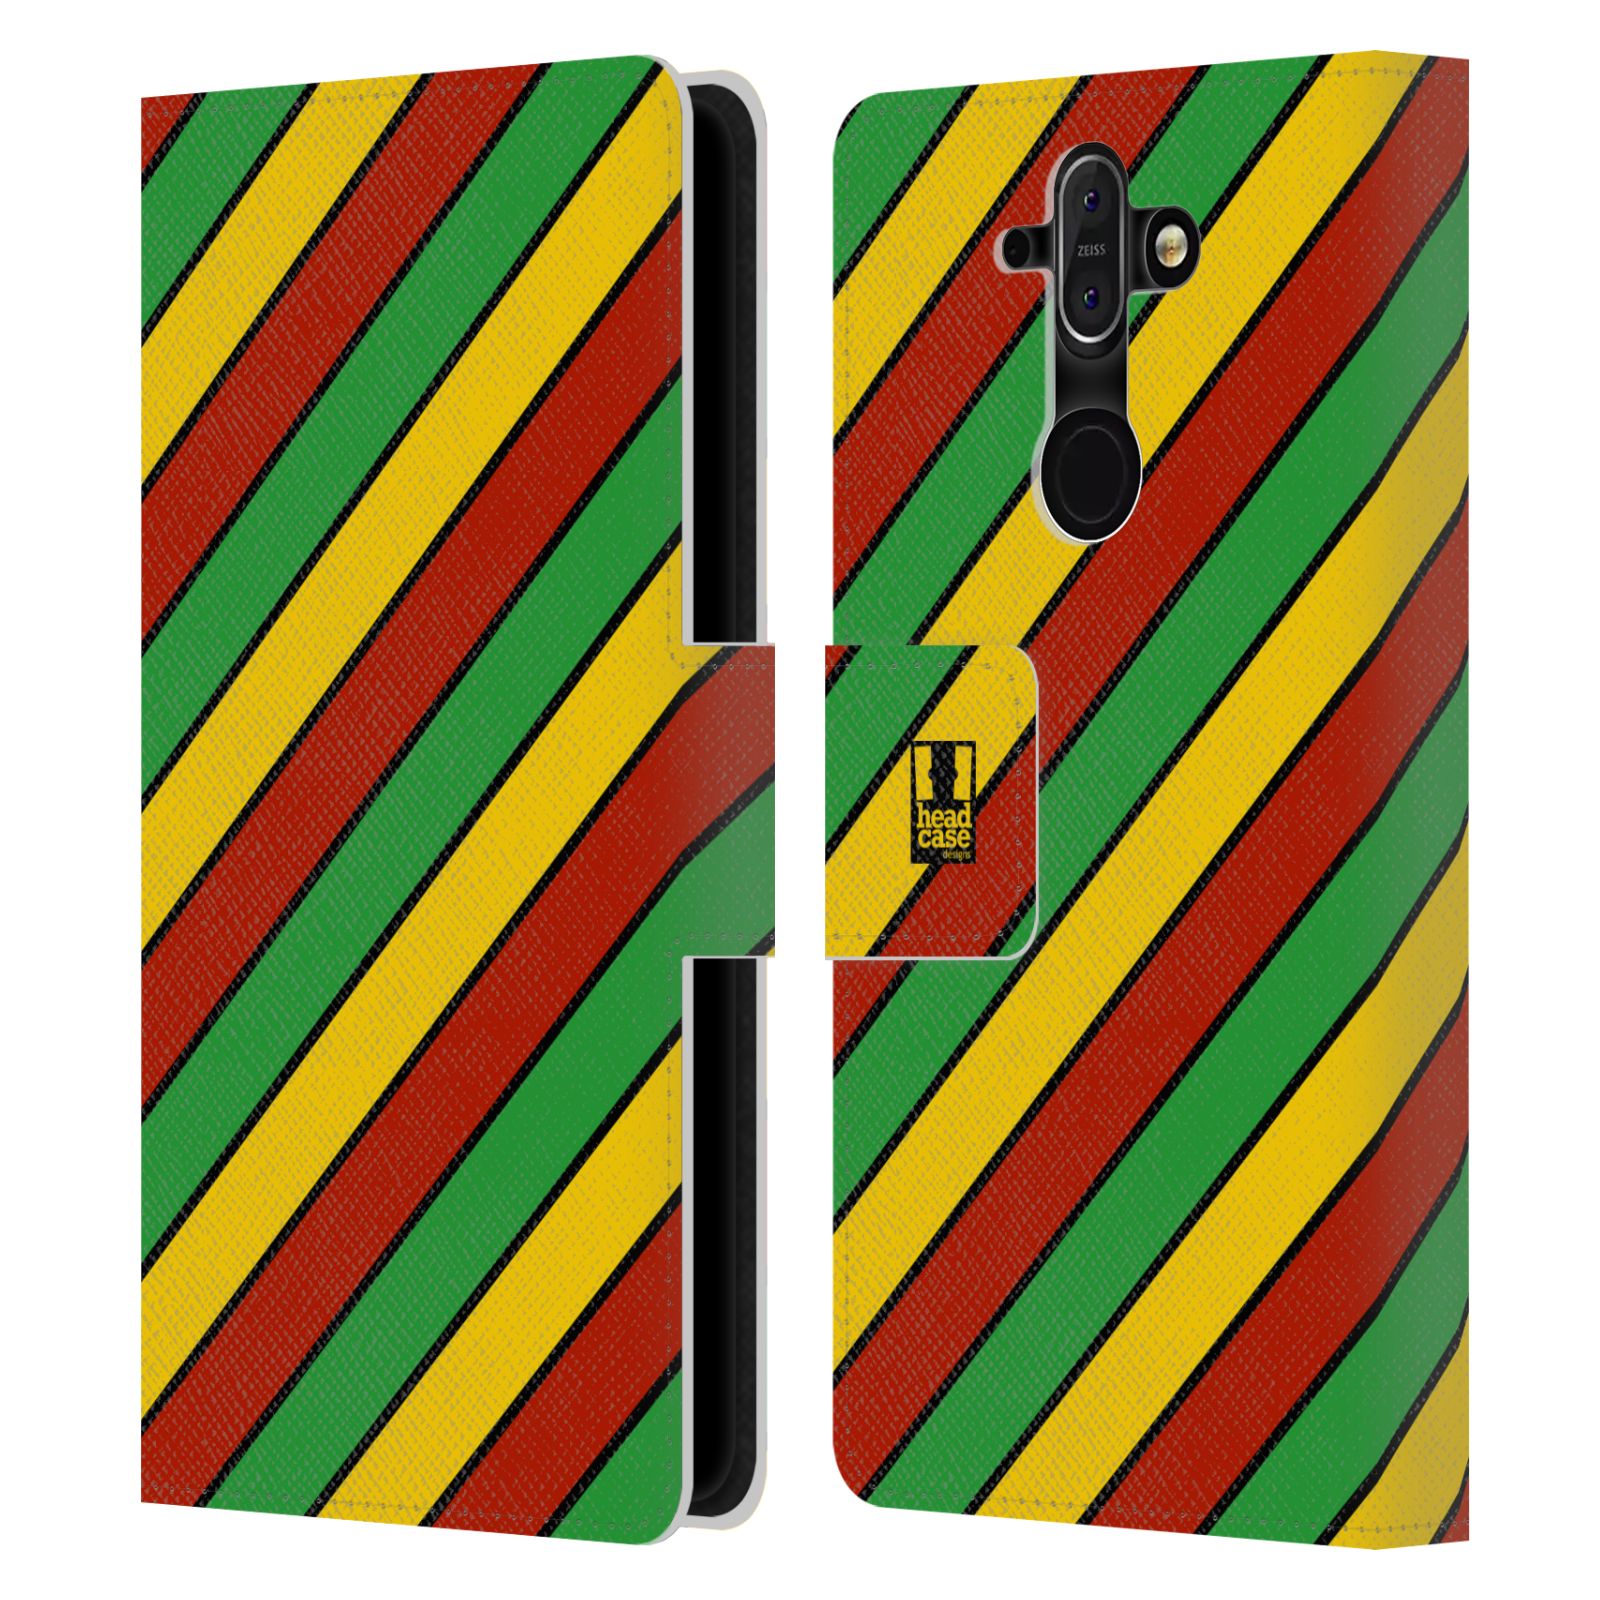 HEAD CASE Flipové pouzdro pro mobil Nokia 8 SIROCCO Rastafariánský motiv Jamajka diagonální pruhy